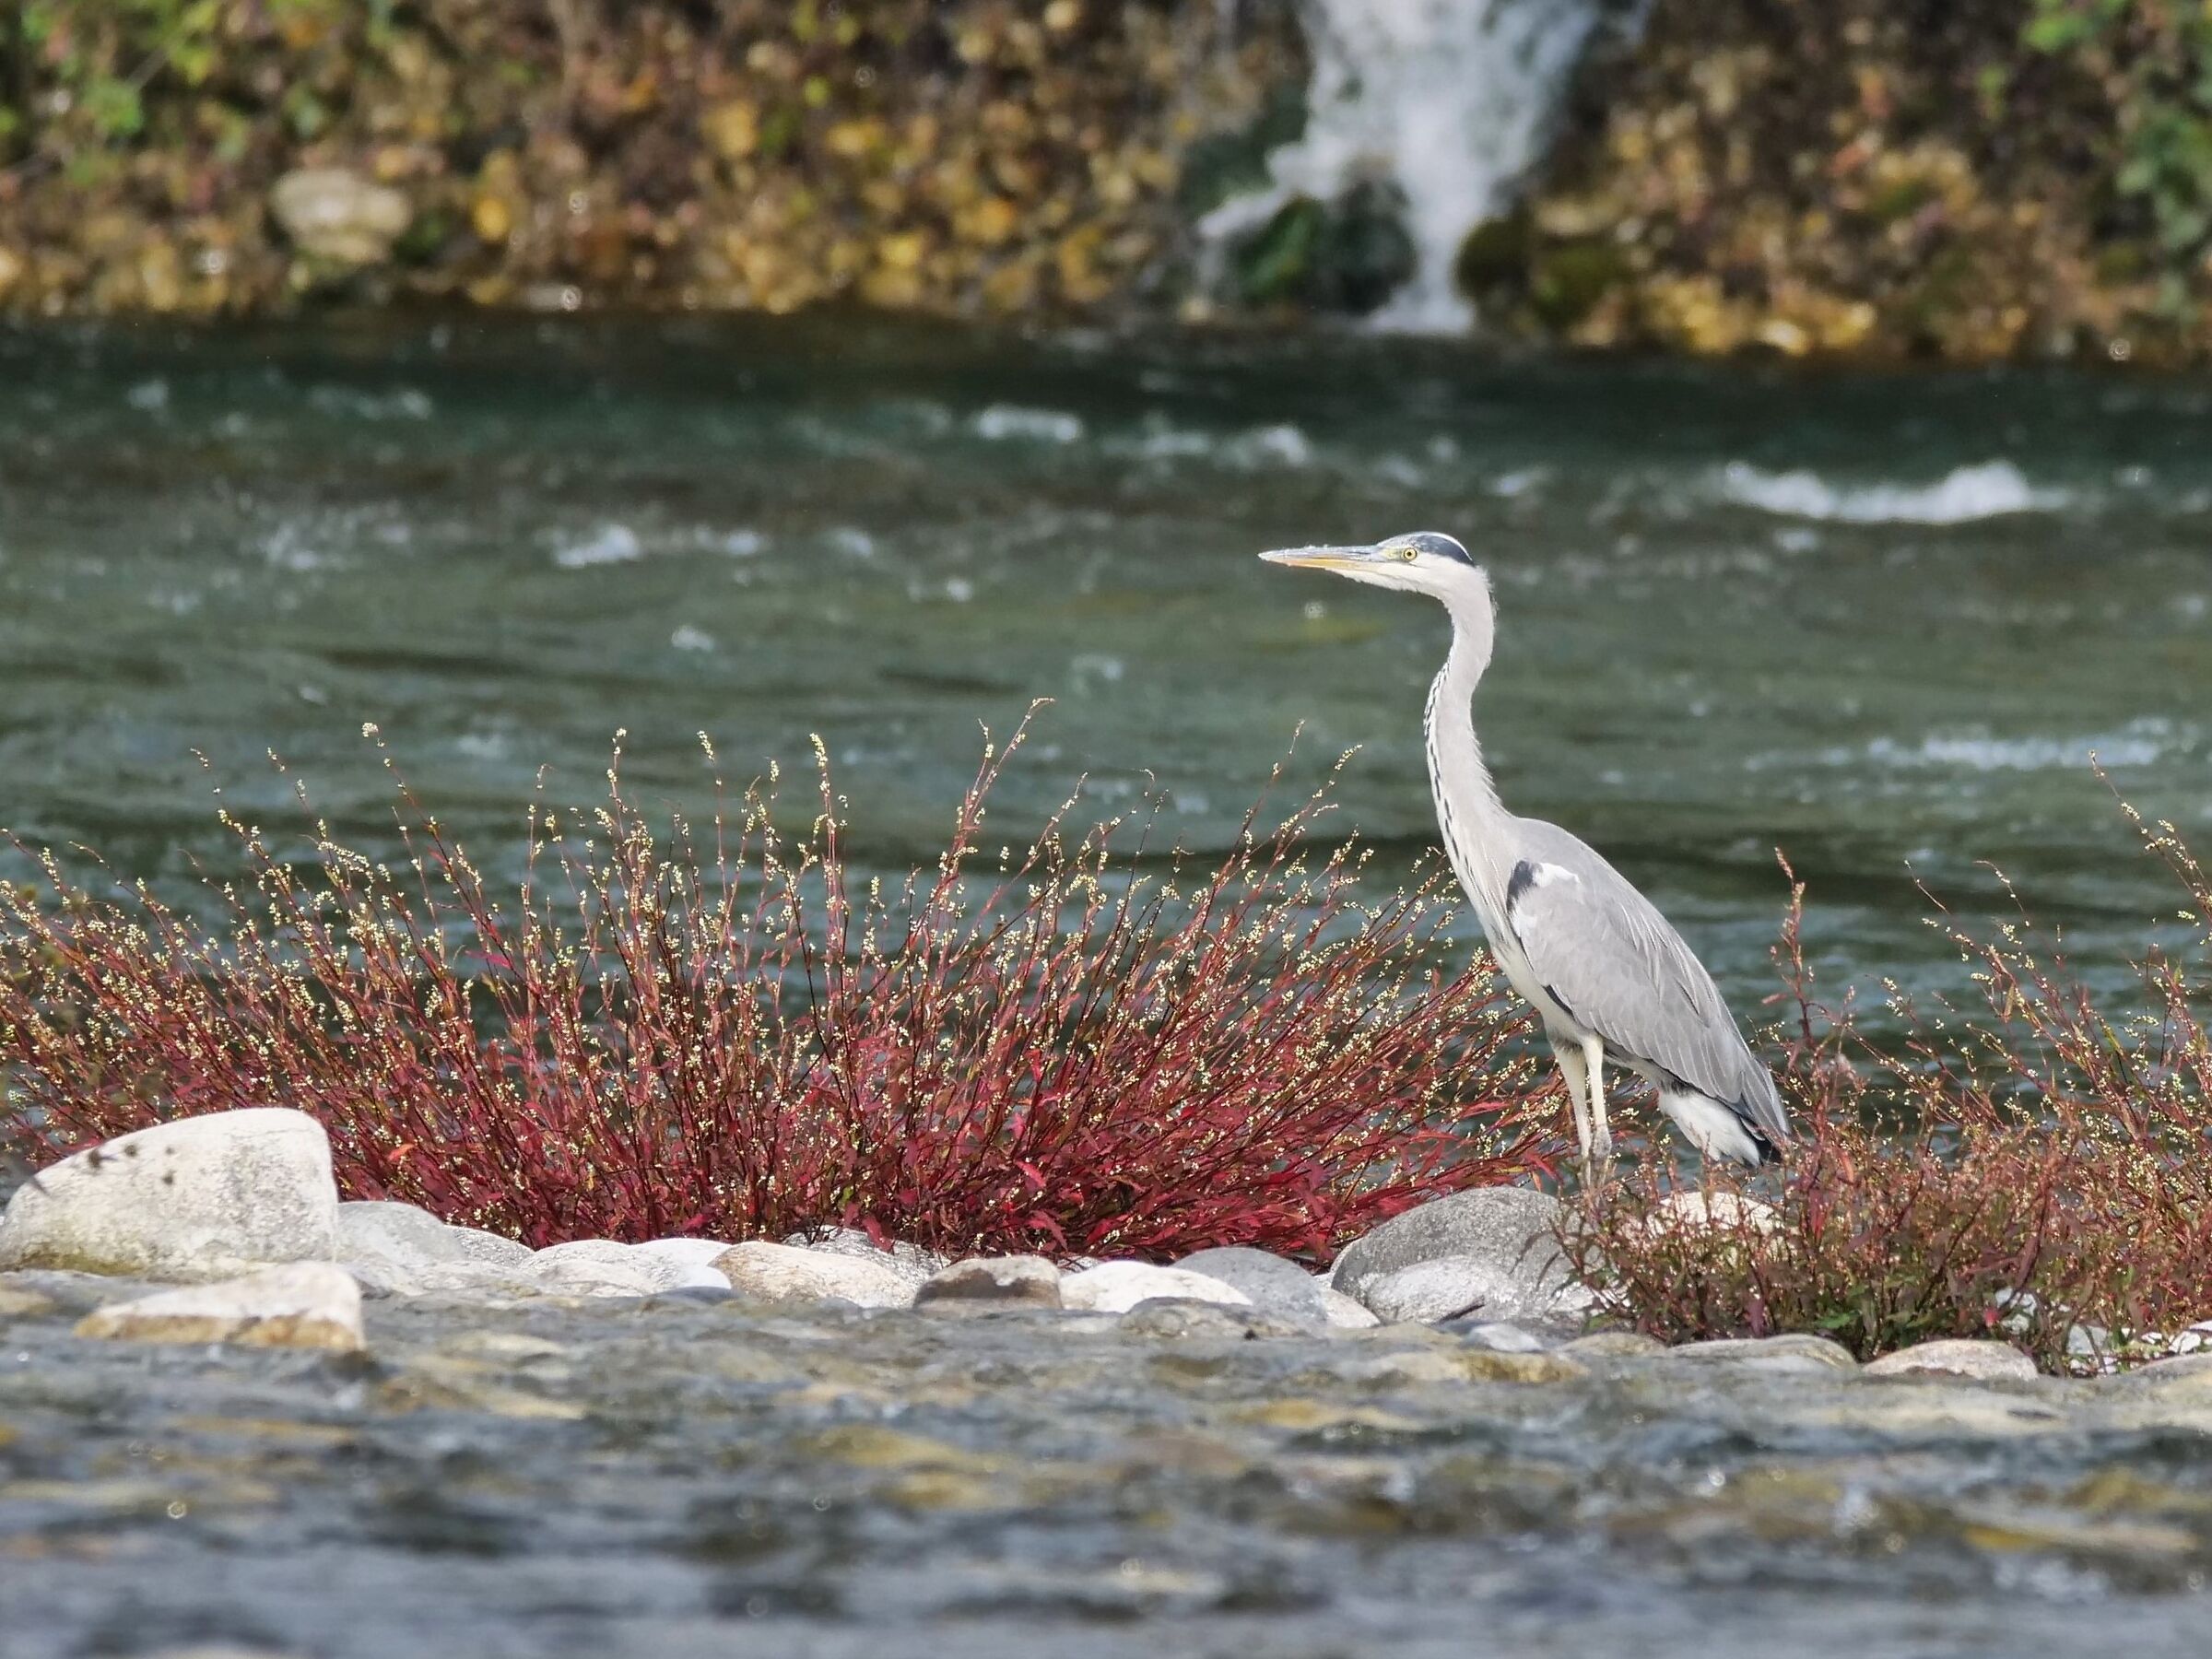 Grey heron fishing on the Ticino river...